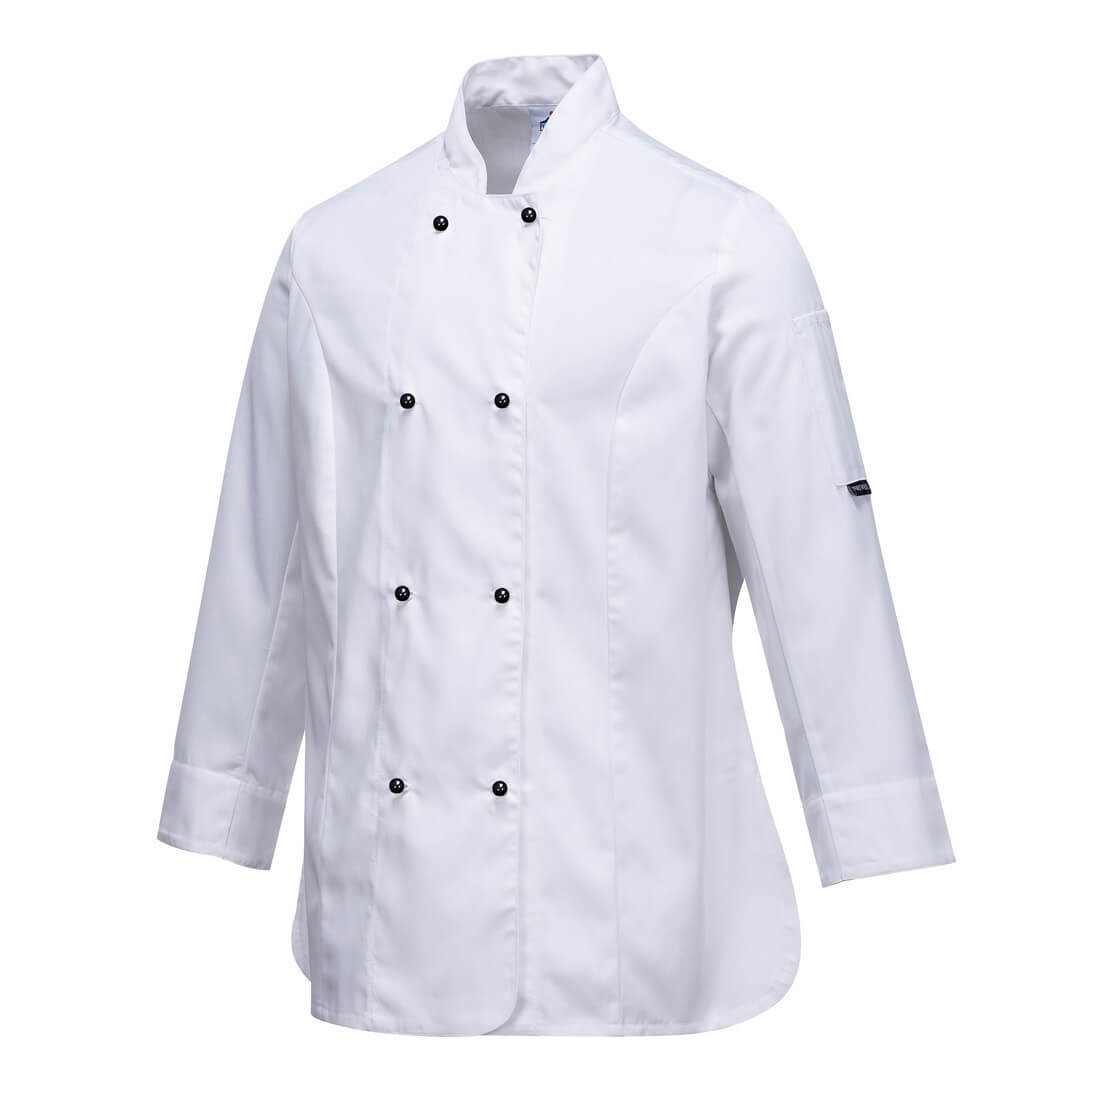 Rachel Ladies Chefs Jacket - Safetywear